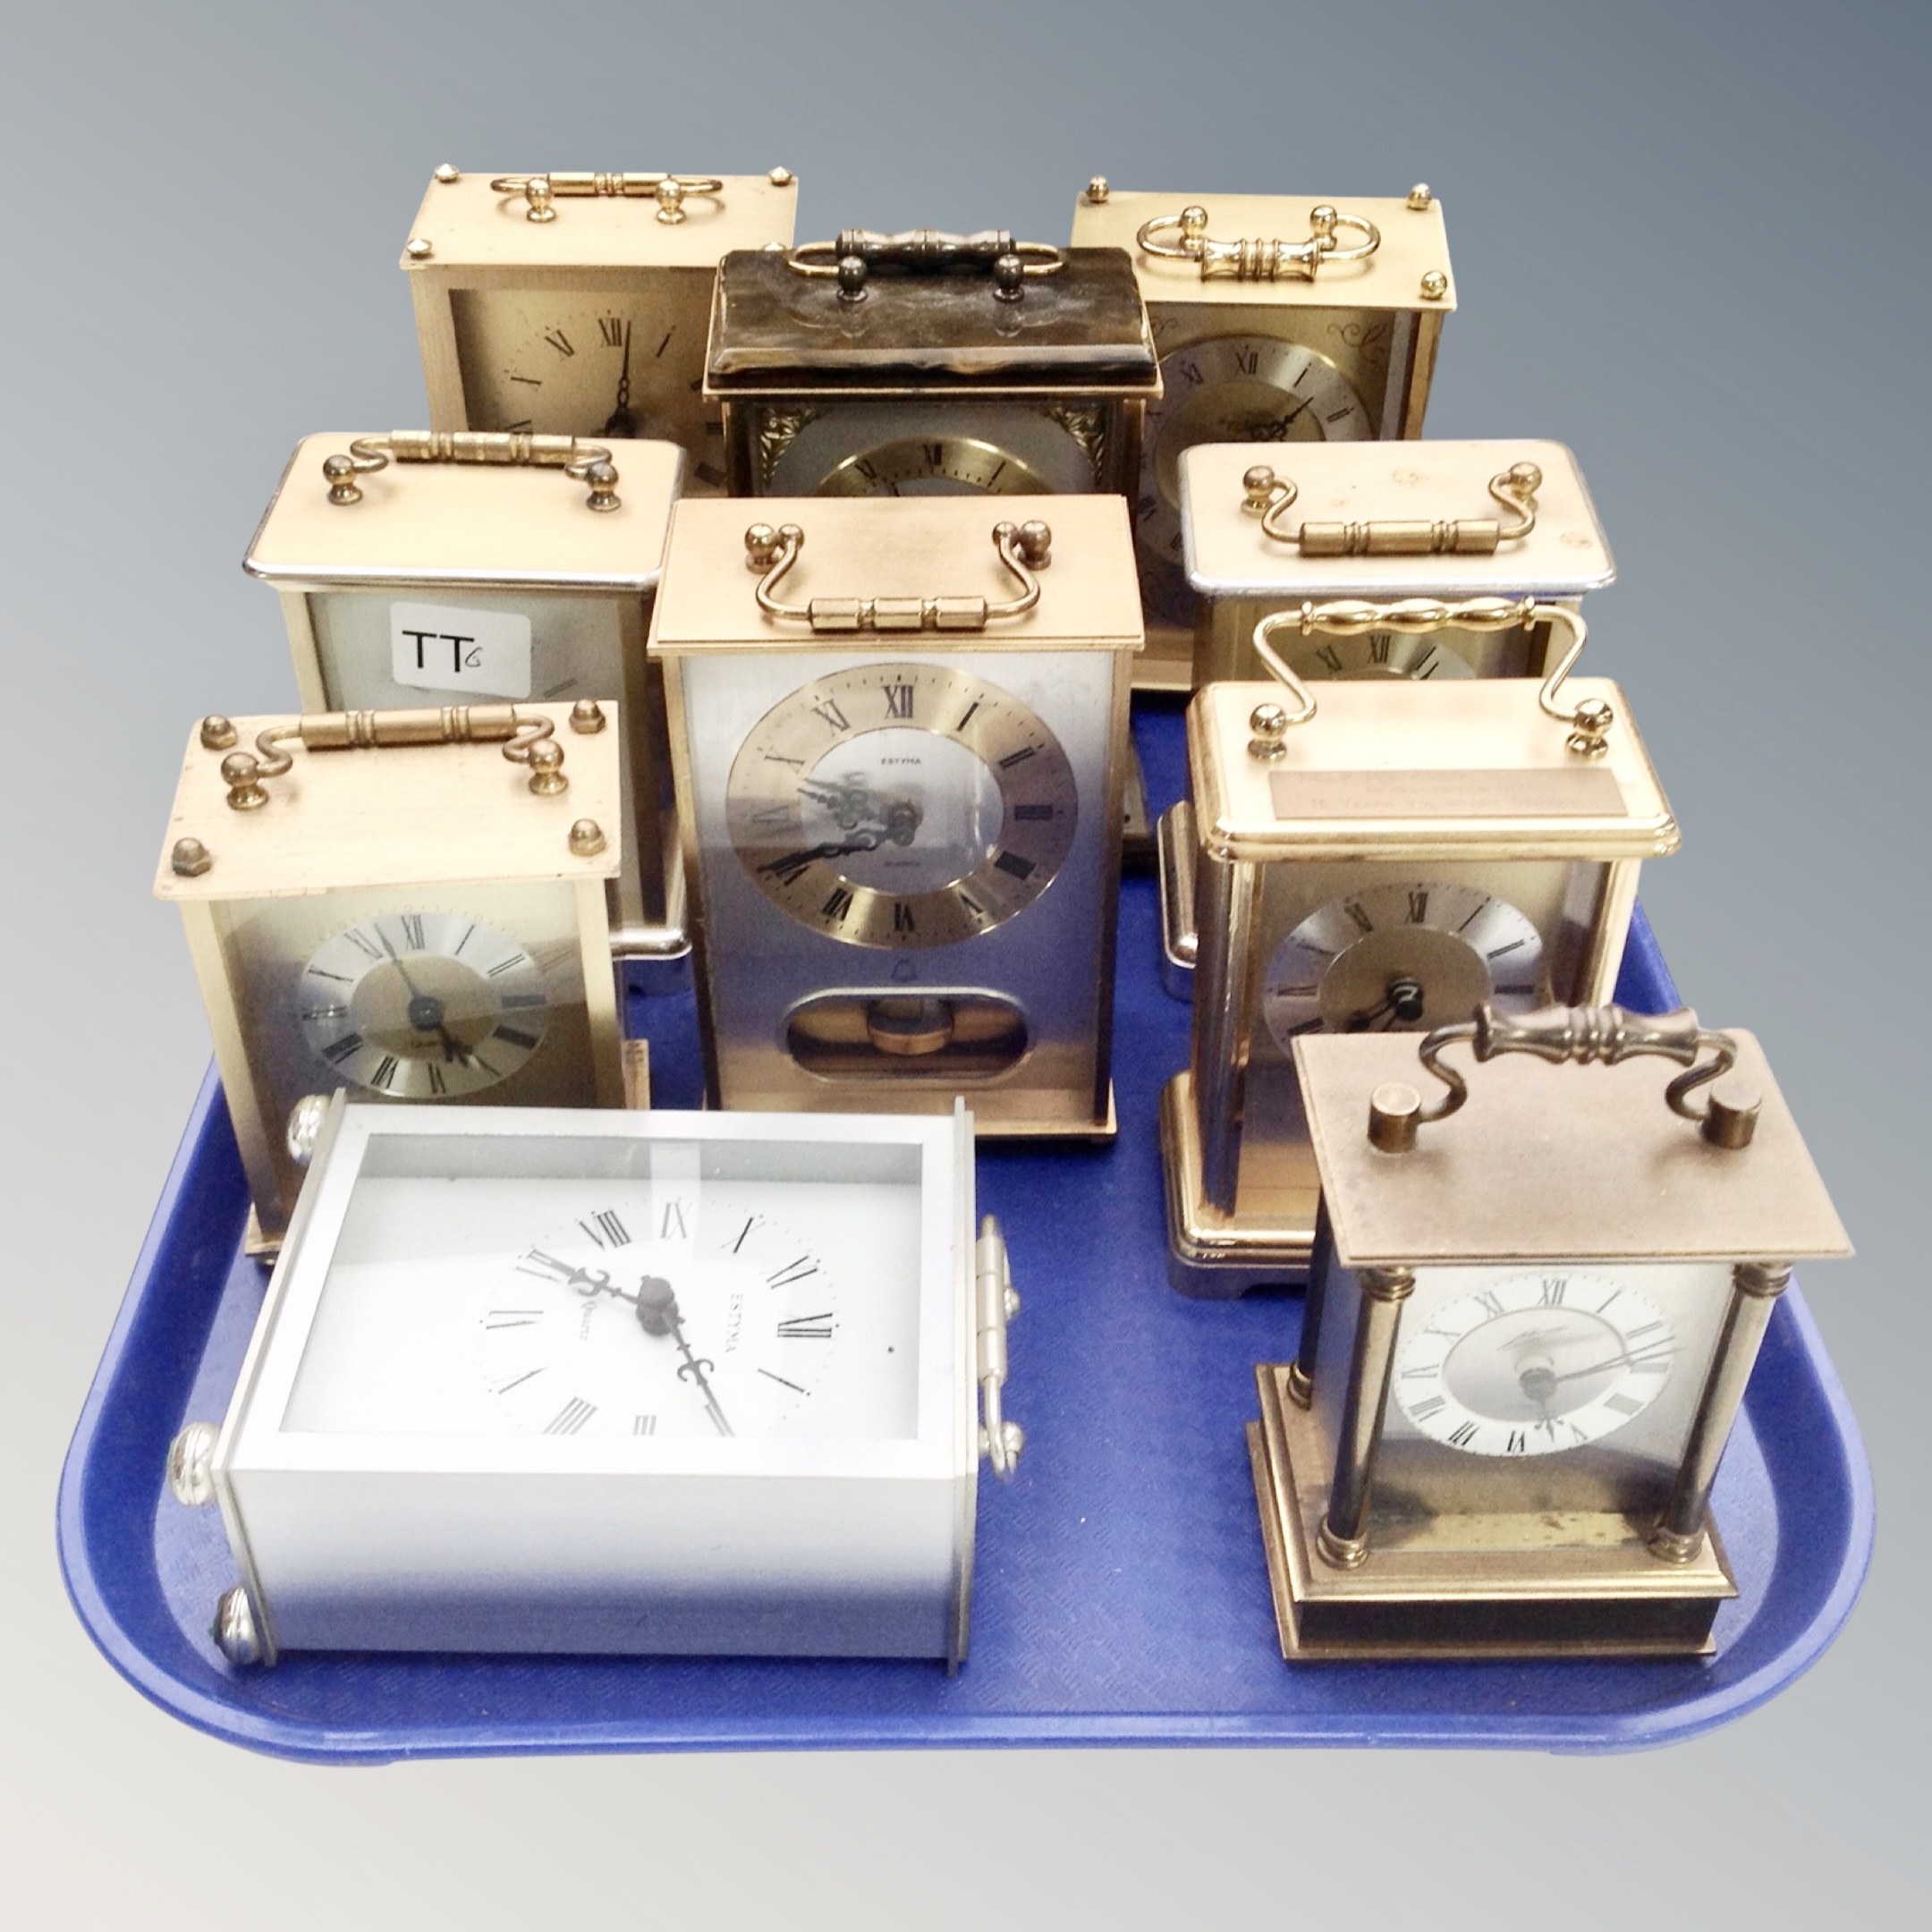 Ten various carriage clocks